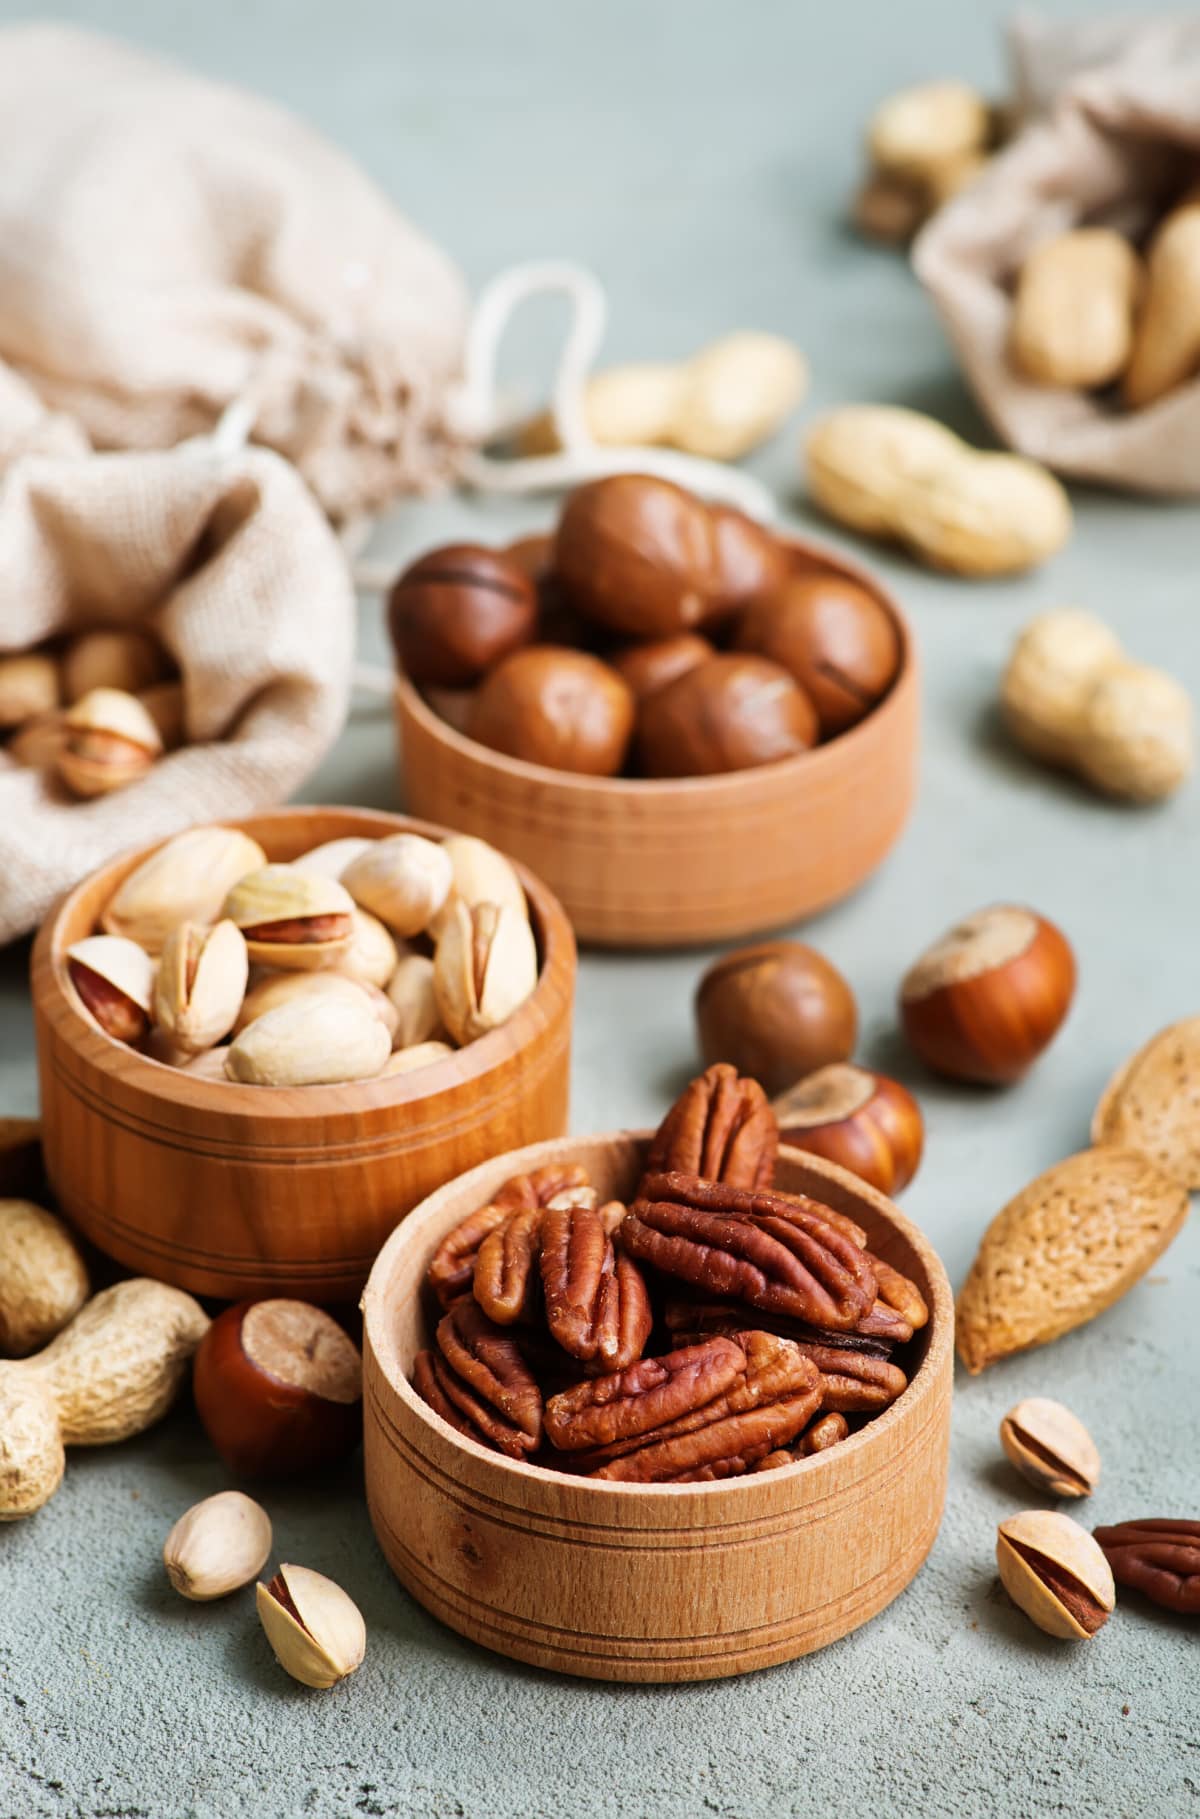 7 Common Symptoms of Tree Nut Allergies